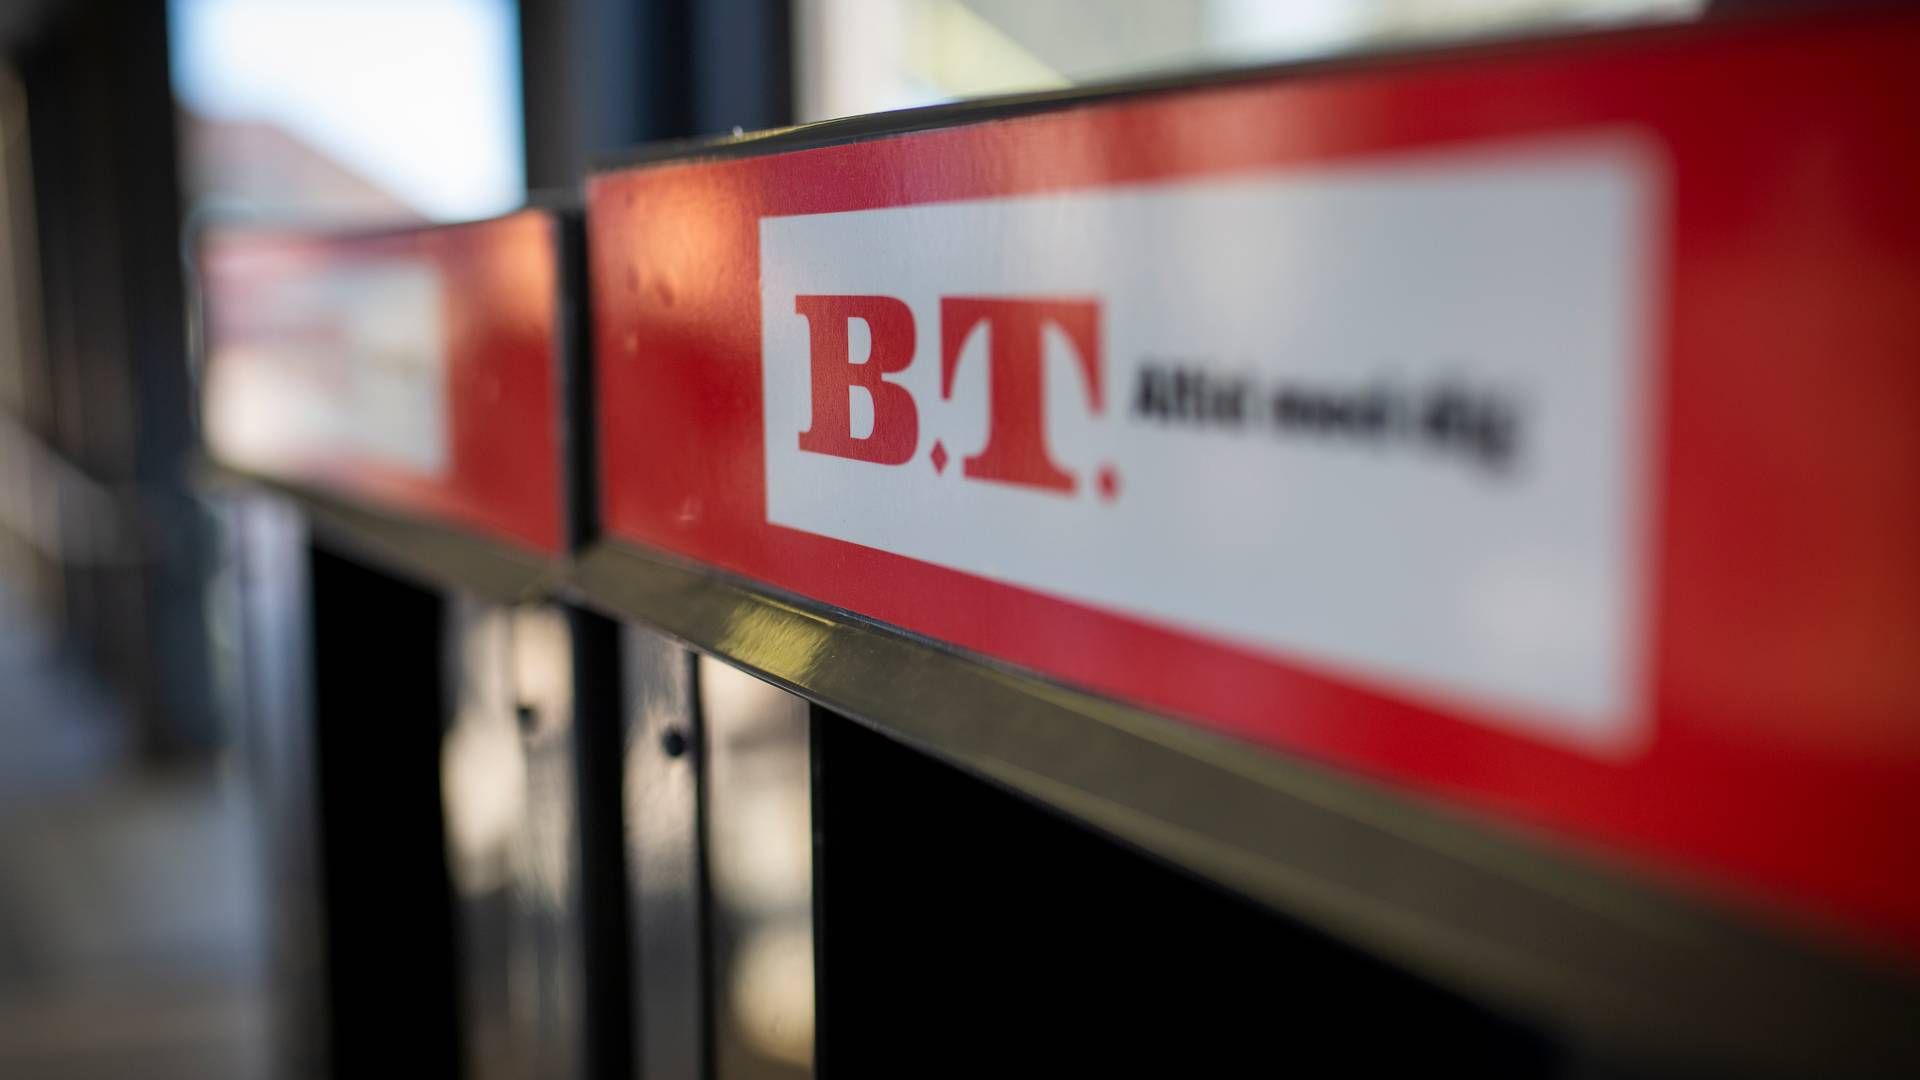 Medarbejderne på B.T. er frustrerede over, at der er sket flere strategi- og chefredaktørskift på relativt kort tid, og at de ikke er blevet inddraget tilstrækkeligt i ændringer. | Foto: Jens Hartmann